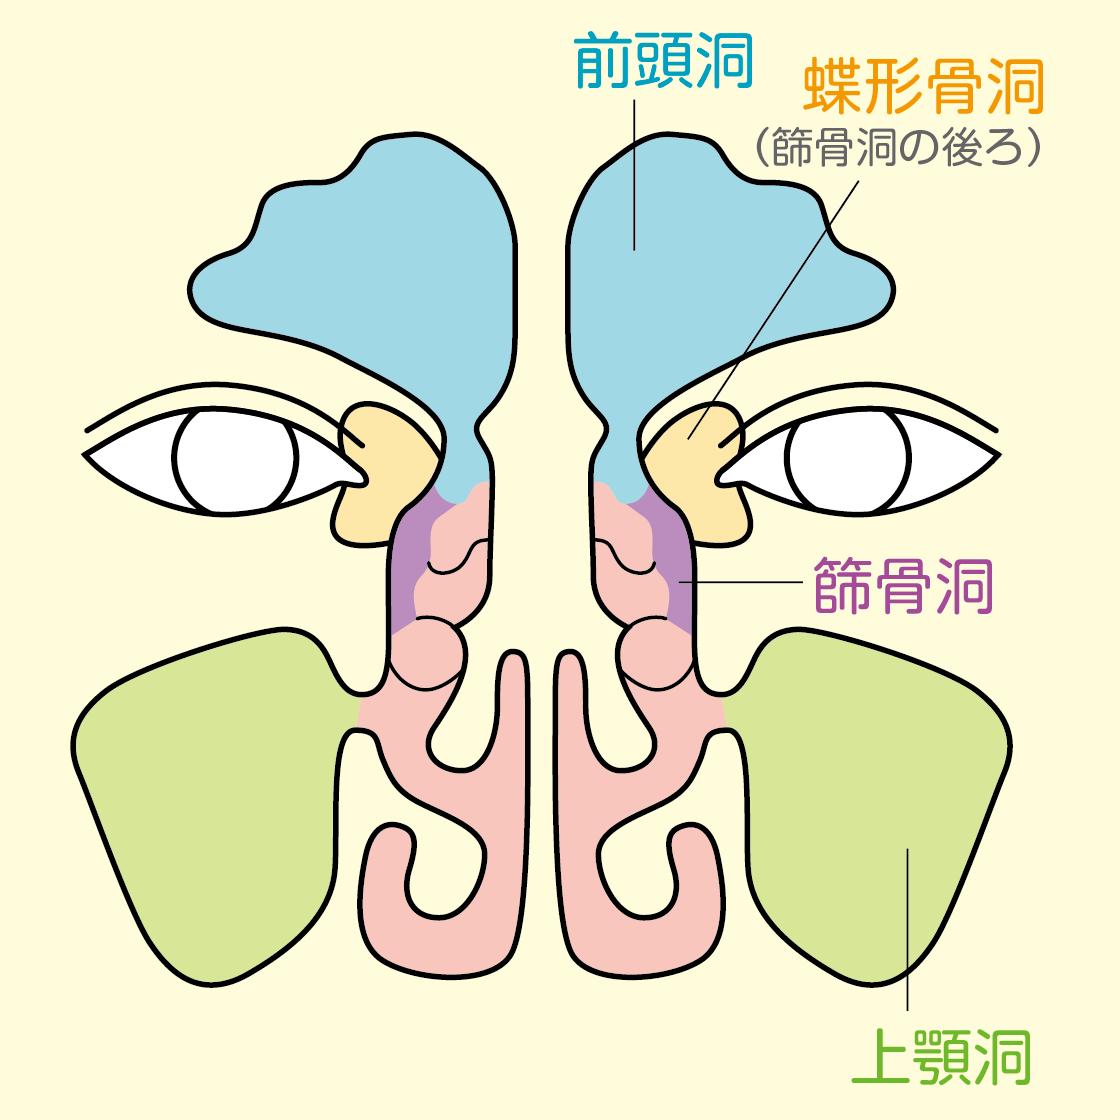 副鼻腔炎とは 大阪副鼻腔炎ドットコム 坂本クリニックグループ 副鼻腔炎 蓄膿症